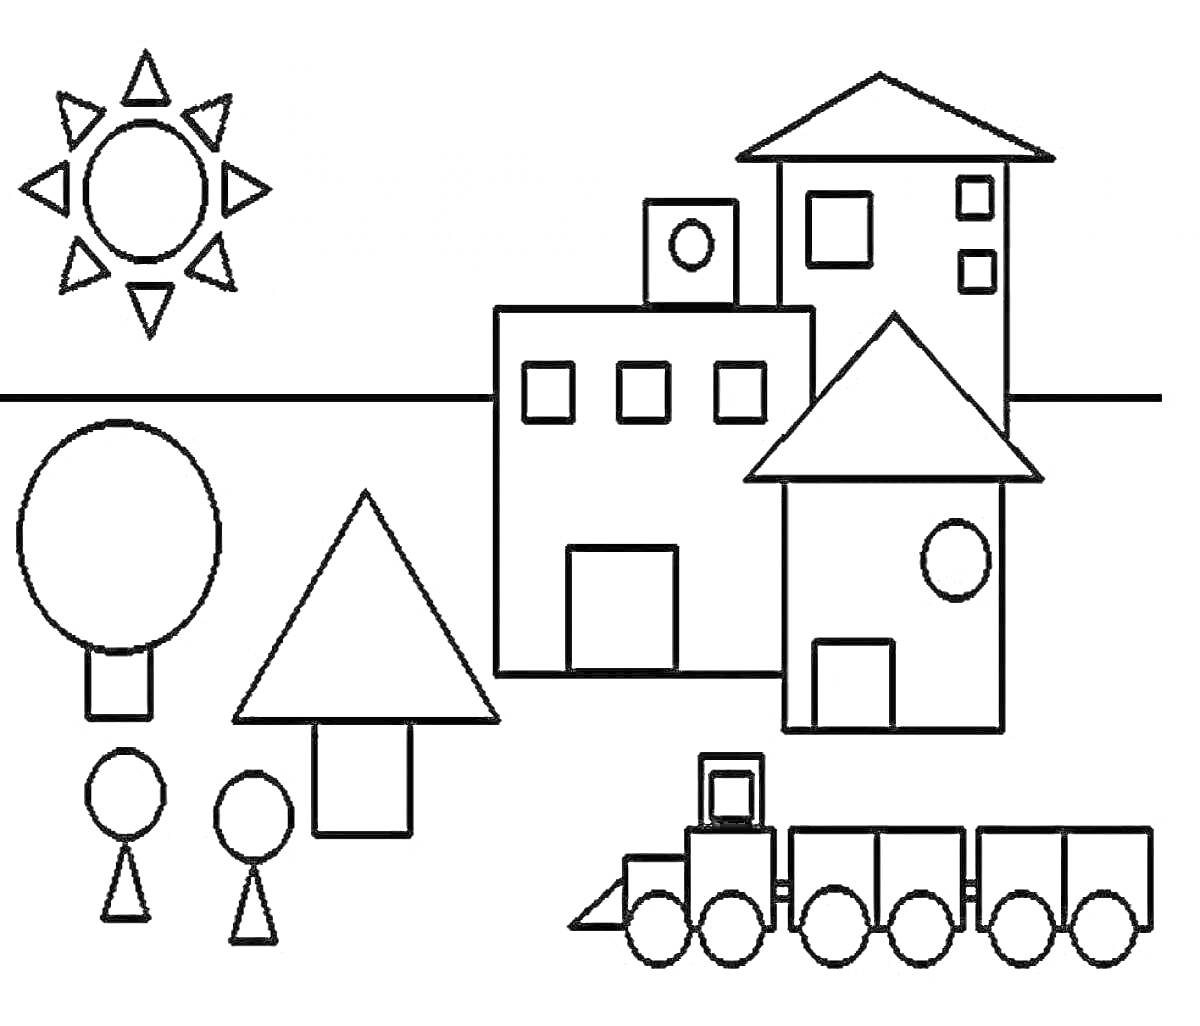 Город с геометрическими фигурами, состоящий из солнца, деревьев, людей, домов и поезда